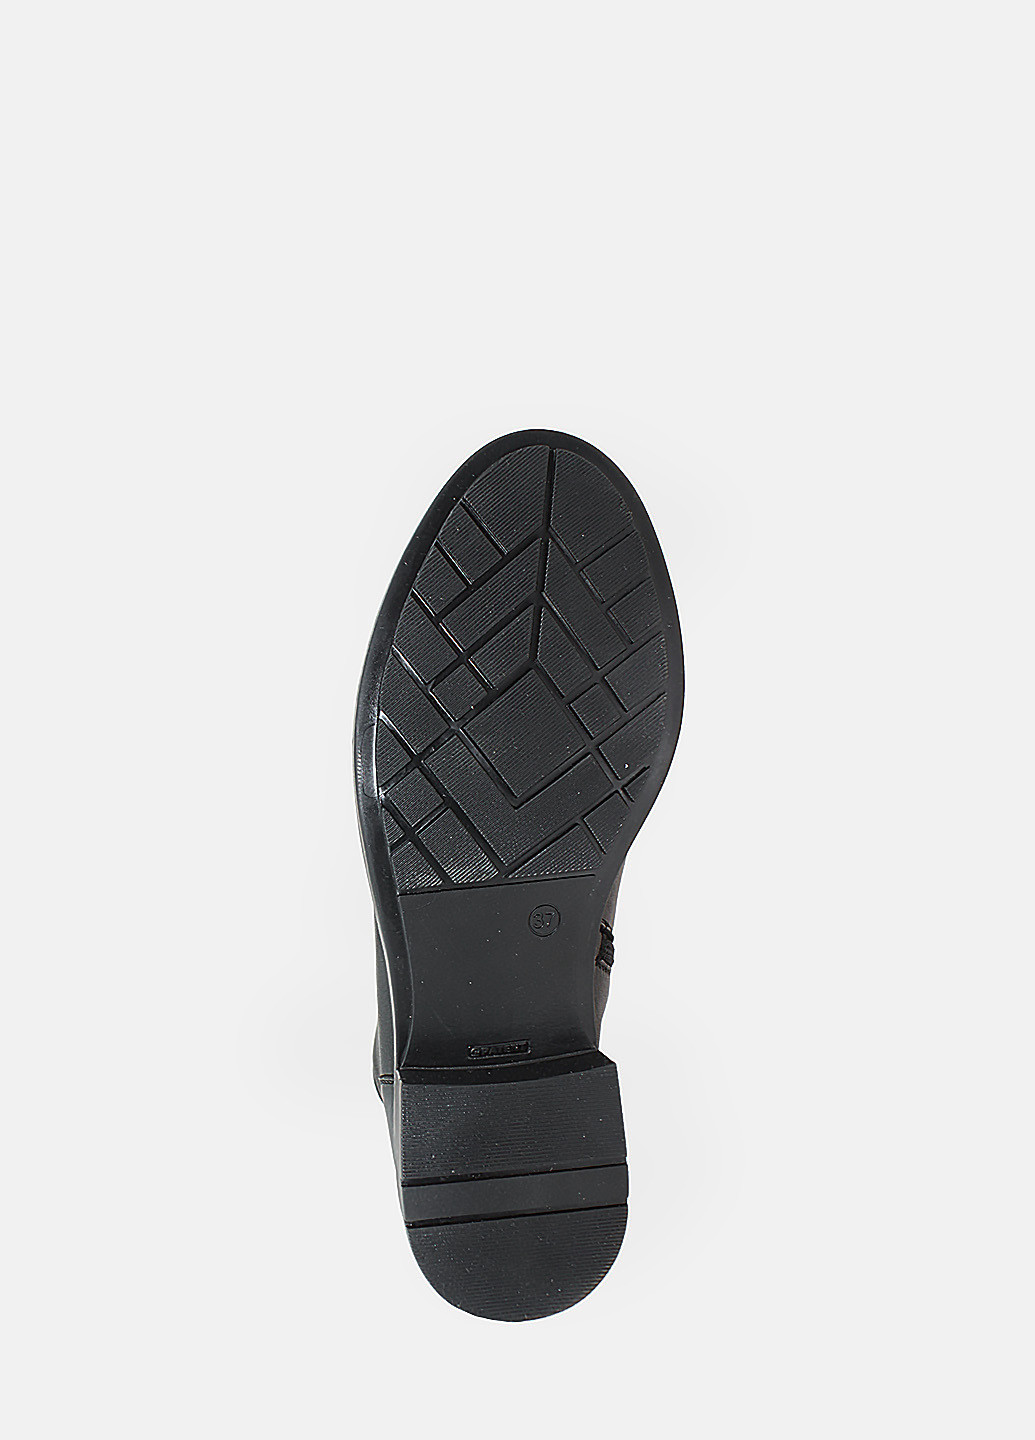 Осенние ботинки rr330-2 черный Romax